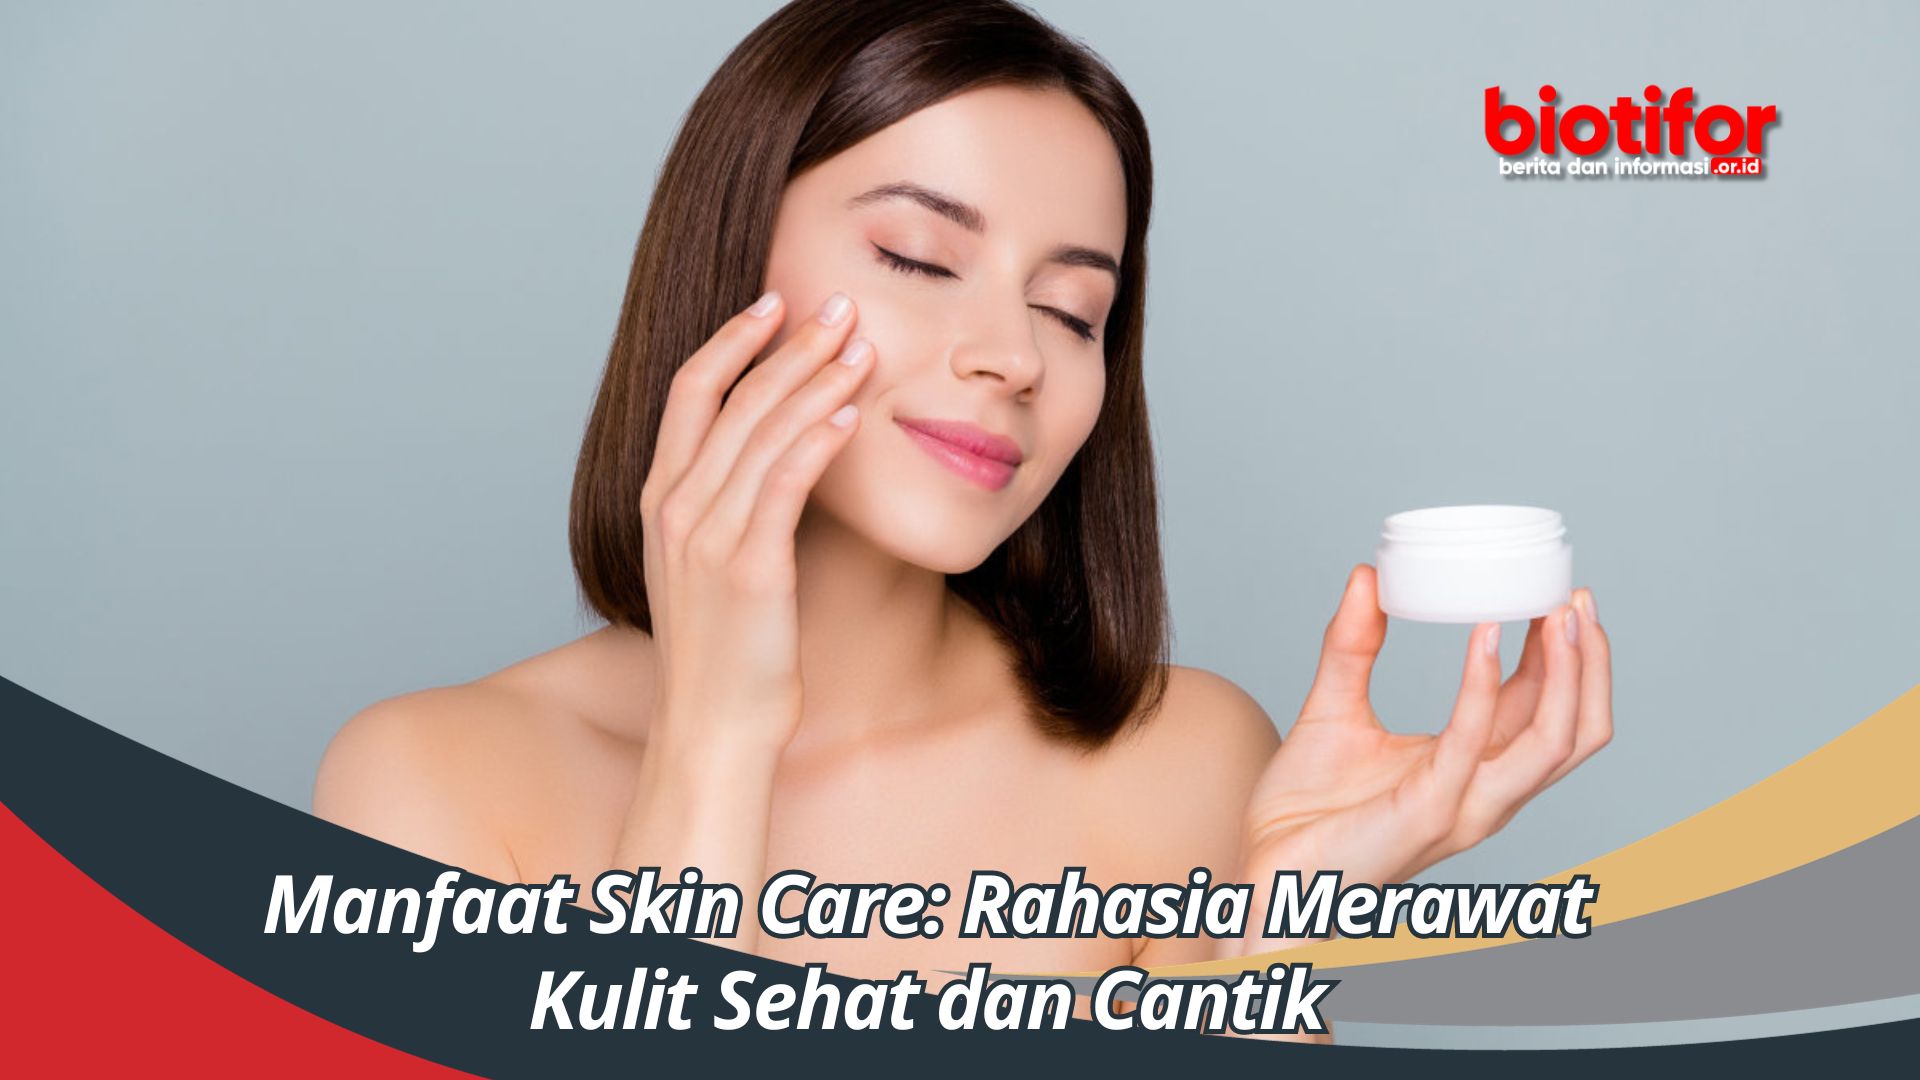 Manfaat Skin Care: Rahasia Merawat Kulit Sehat dan Cantik